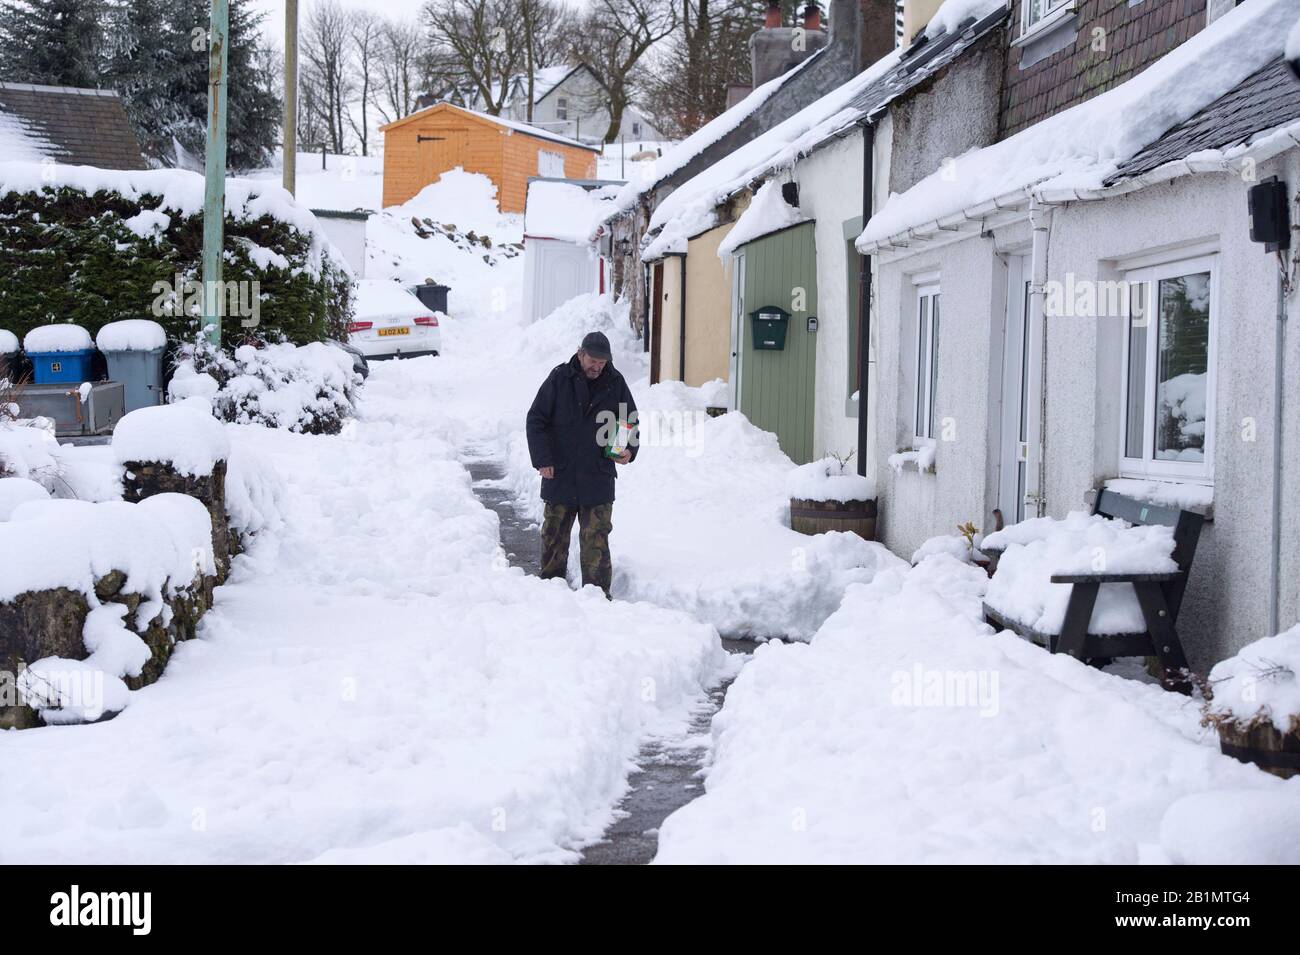 Un homme descend une rue enneigée dans le village de Leadhills, South Lanarkshire, Ecosse. Banque D'Images